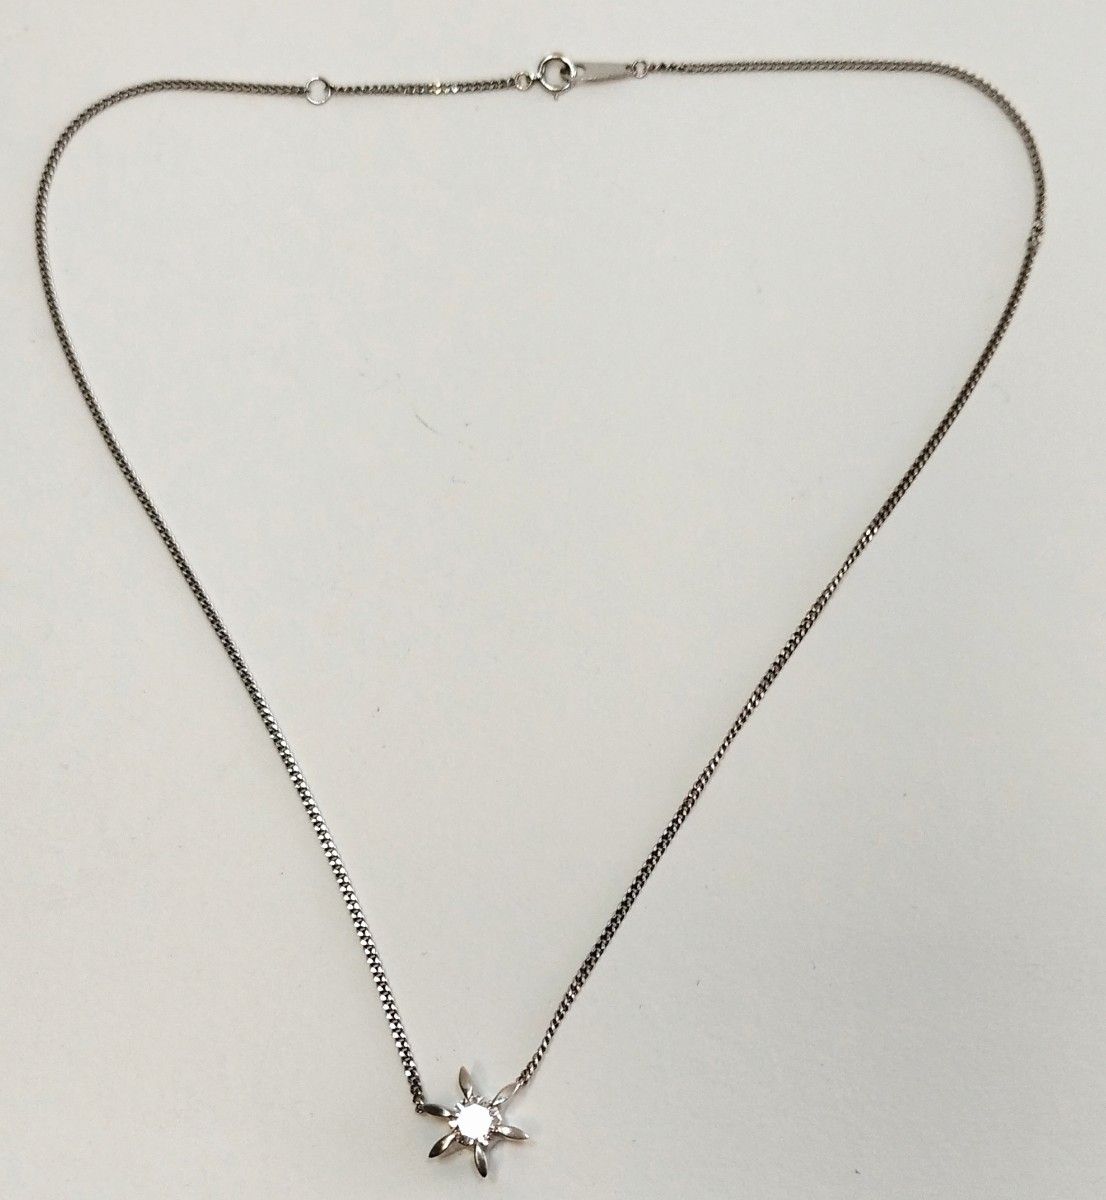 ルミアミのお部屋からの中古のダイヤのPTネックレス 刻印は0597 ペンダントPt900 チェーンPt850 総重量は6.4g